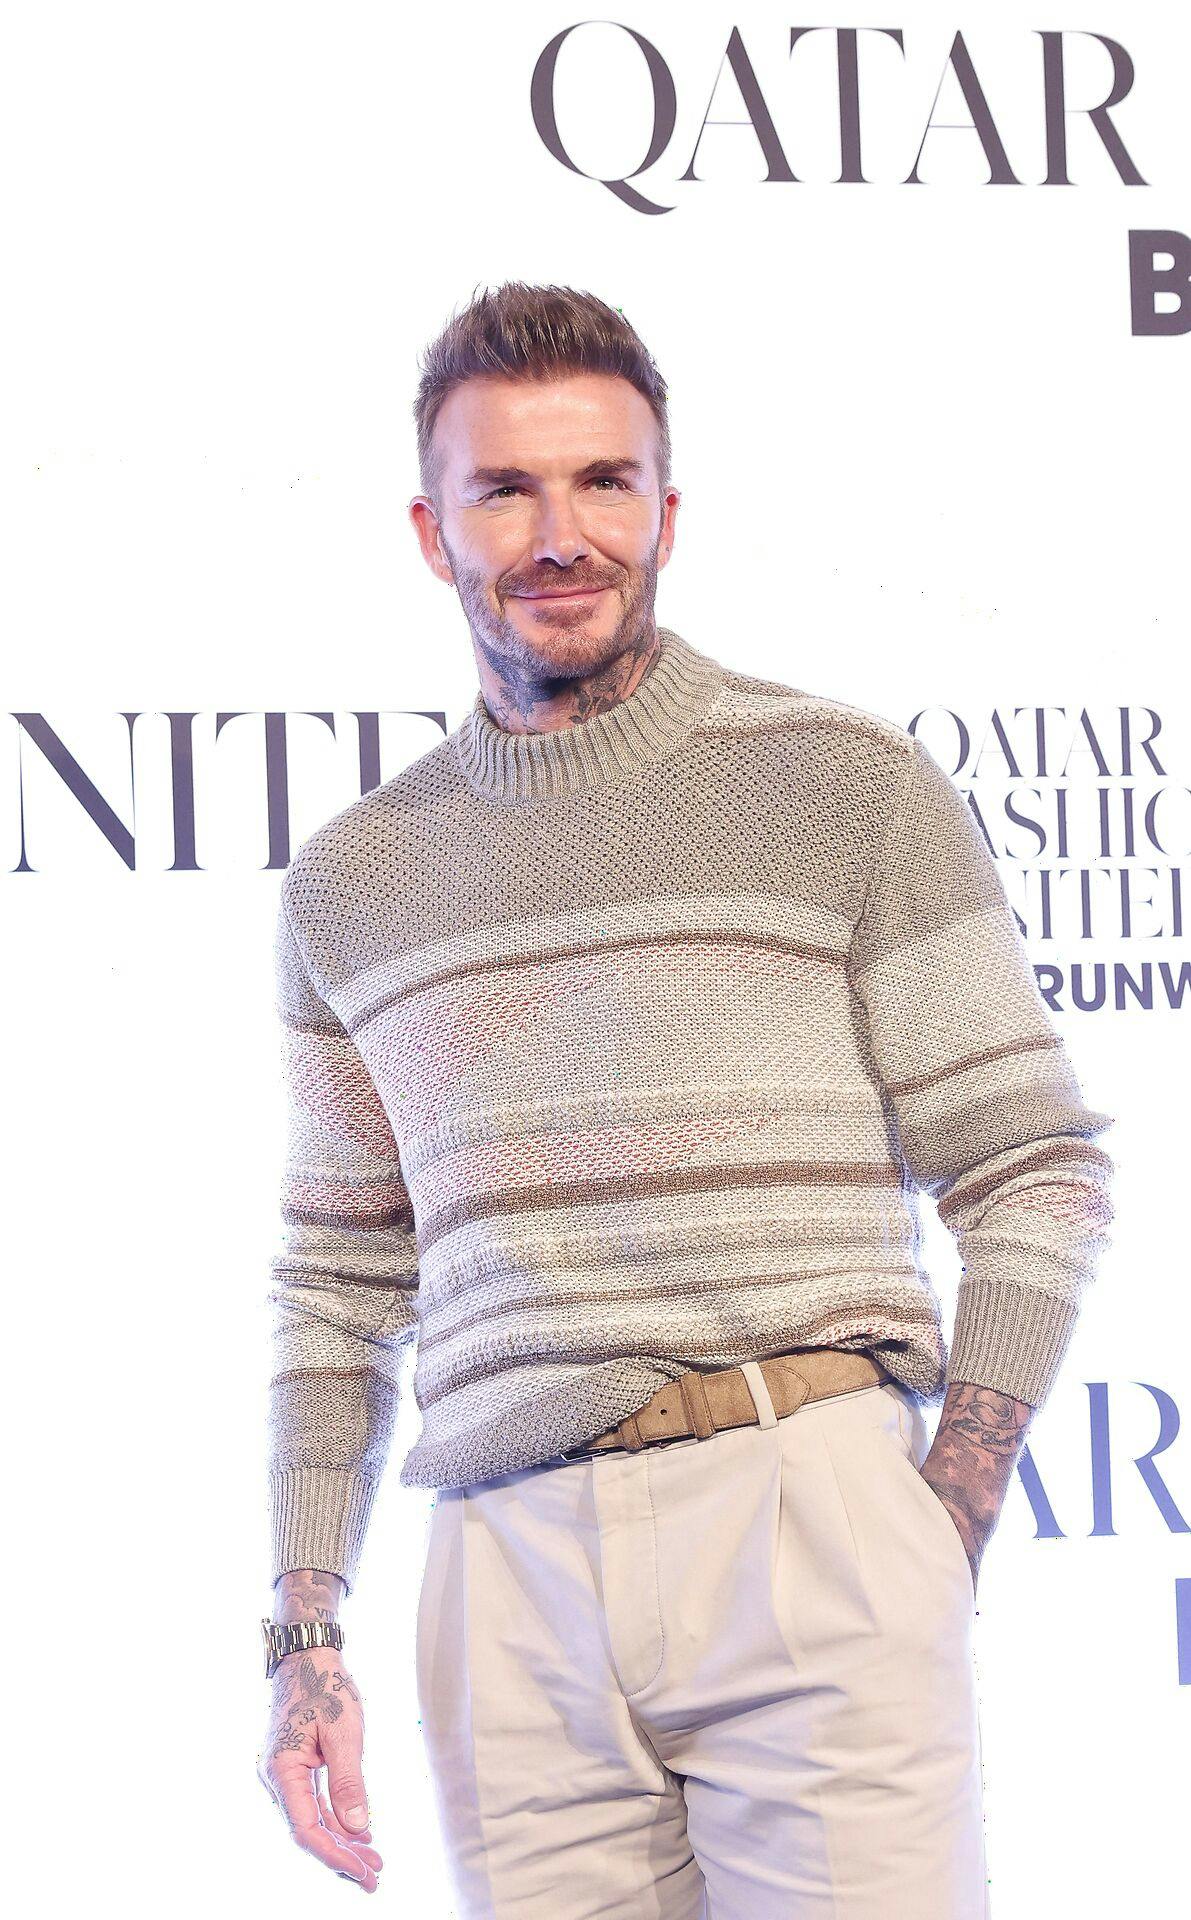 David Beckham fik kritik for at reklamere for VM i Qatar i 2022.
